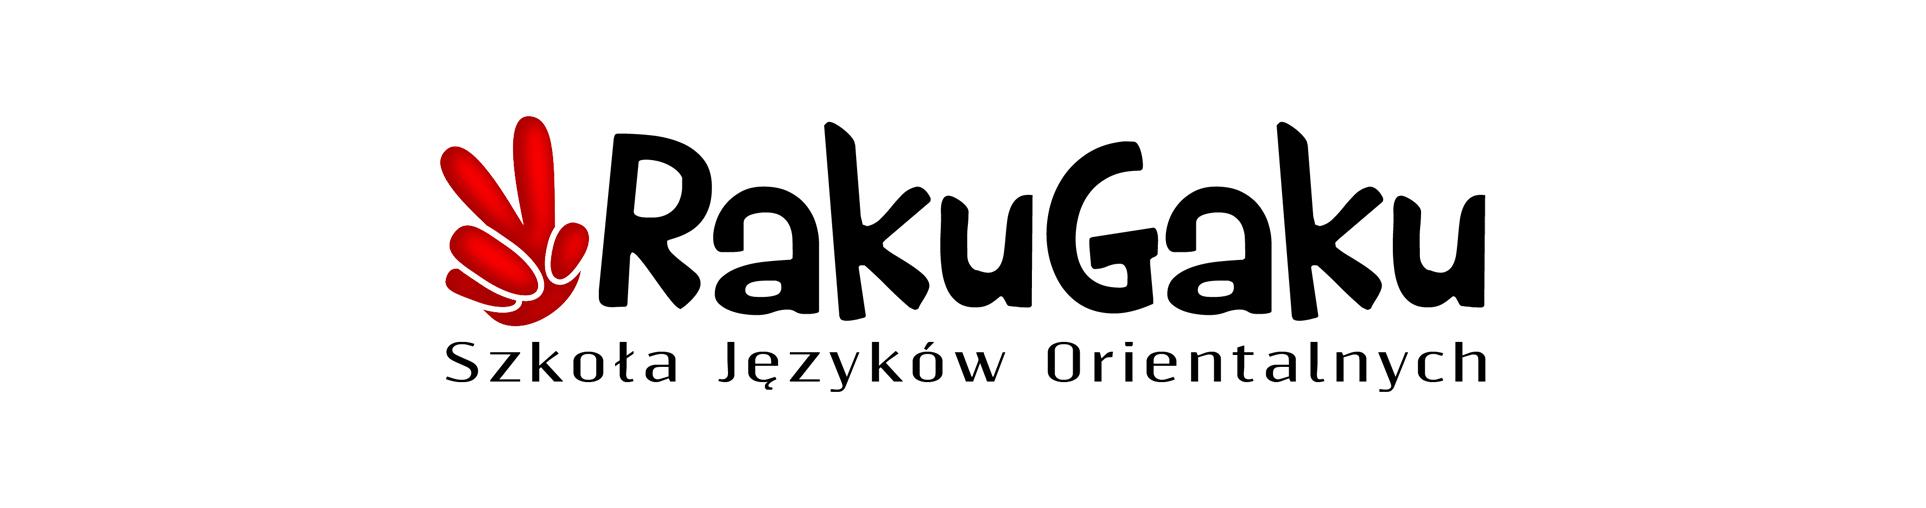 Logo Raku Gaku